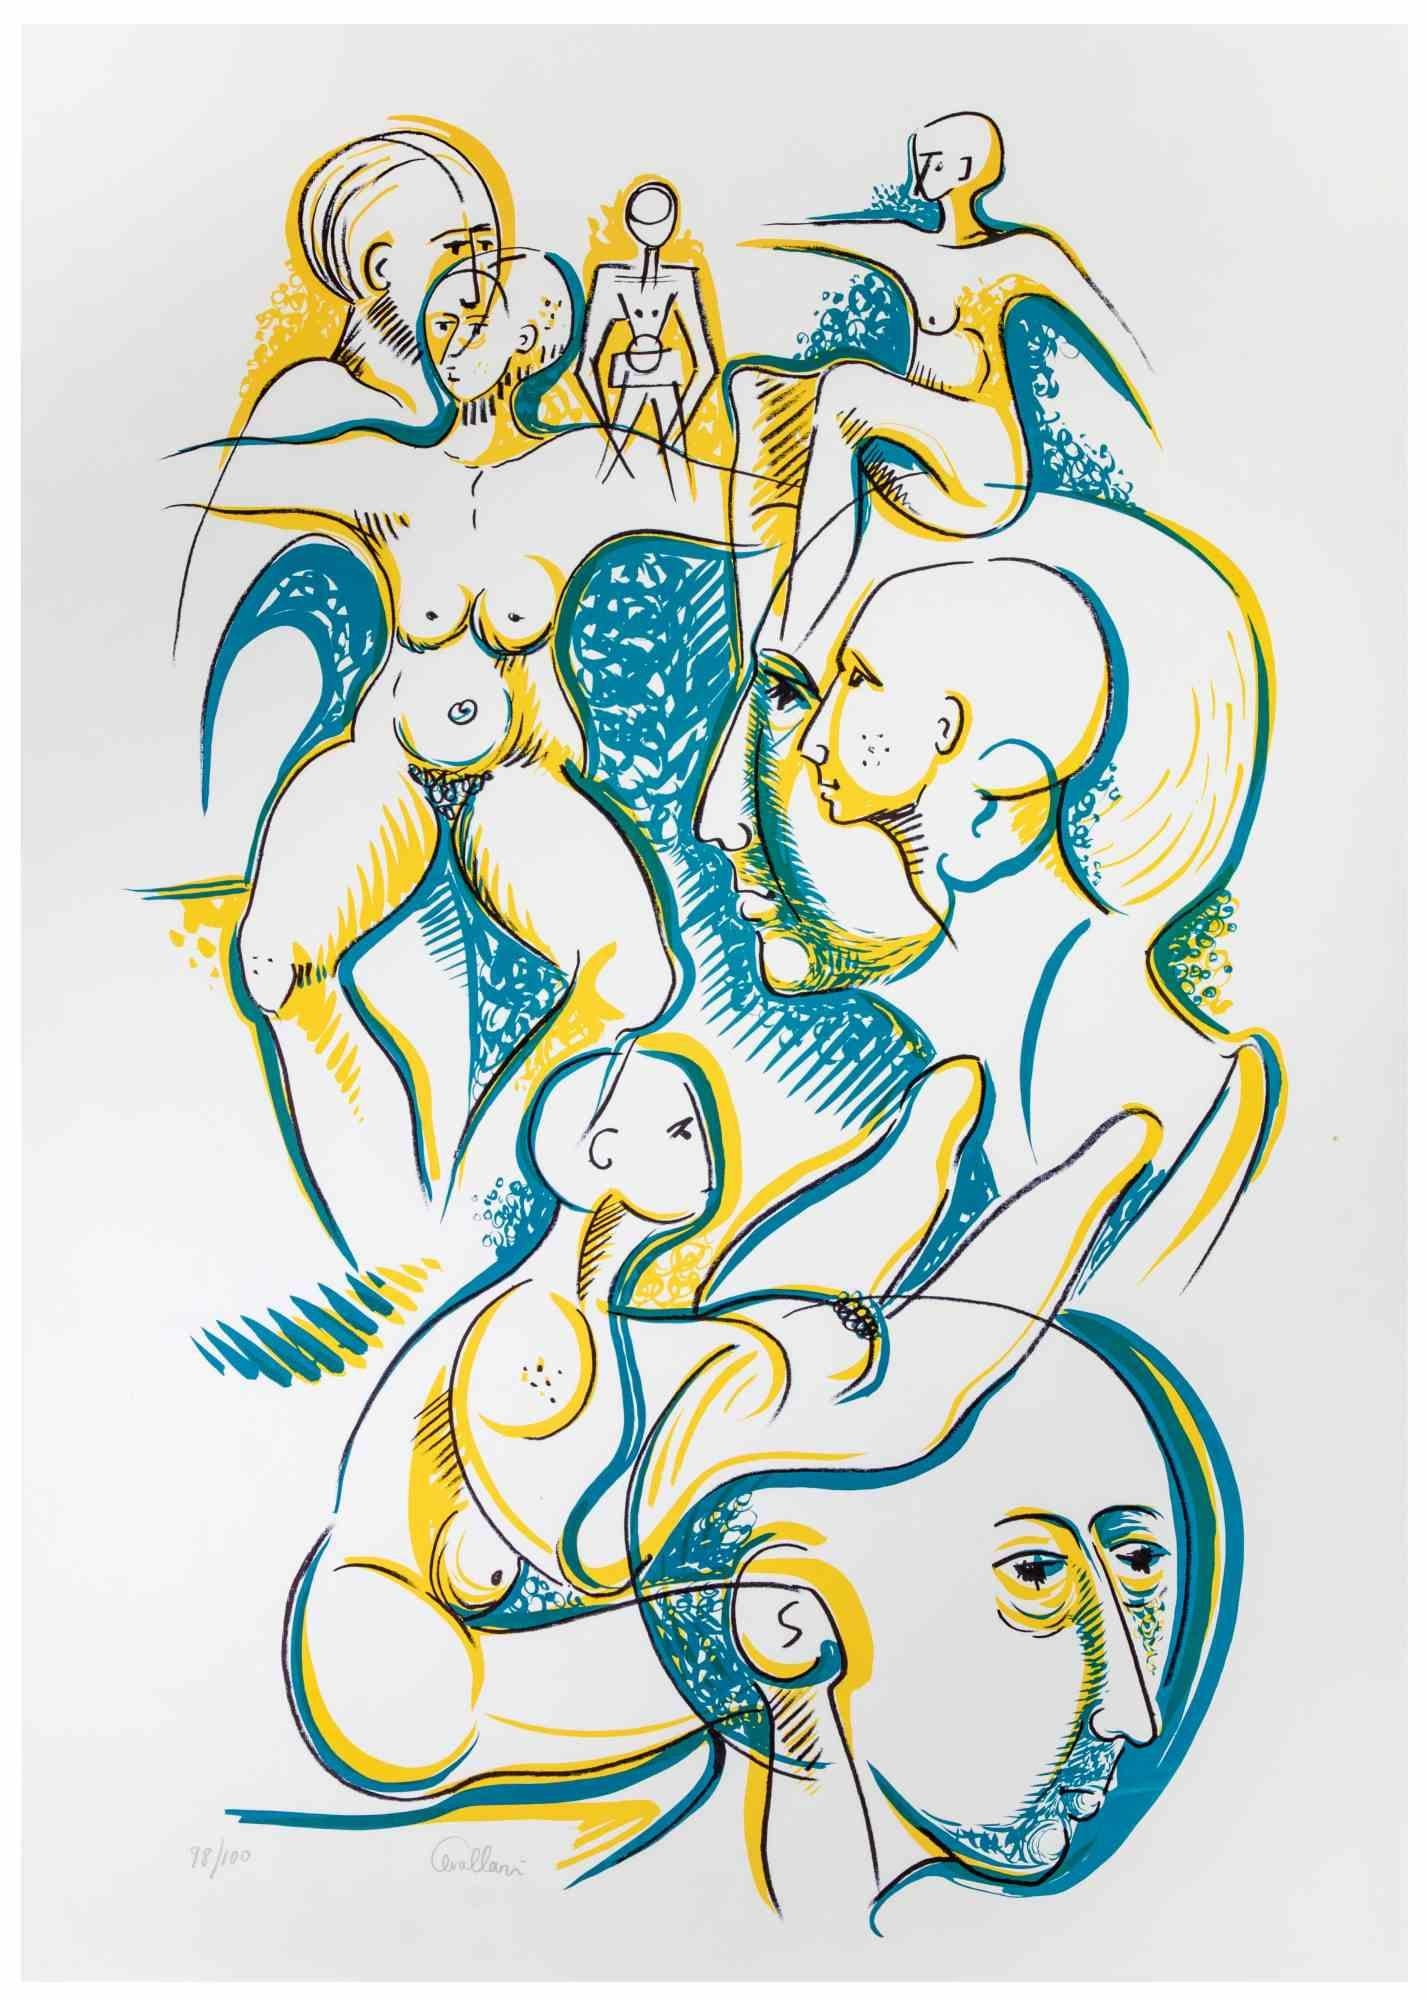 Blue and Yellow Figures ist eine Lithographie auf Papier, die Alberto Cavallari in den 1970er Jahren realisierte.

Handsignierte und nummerierte Auflage von 100 Drucken.

Gute Bedingungen.